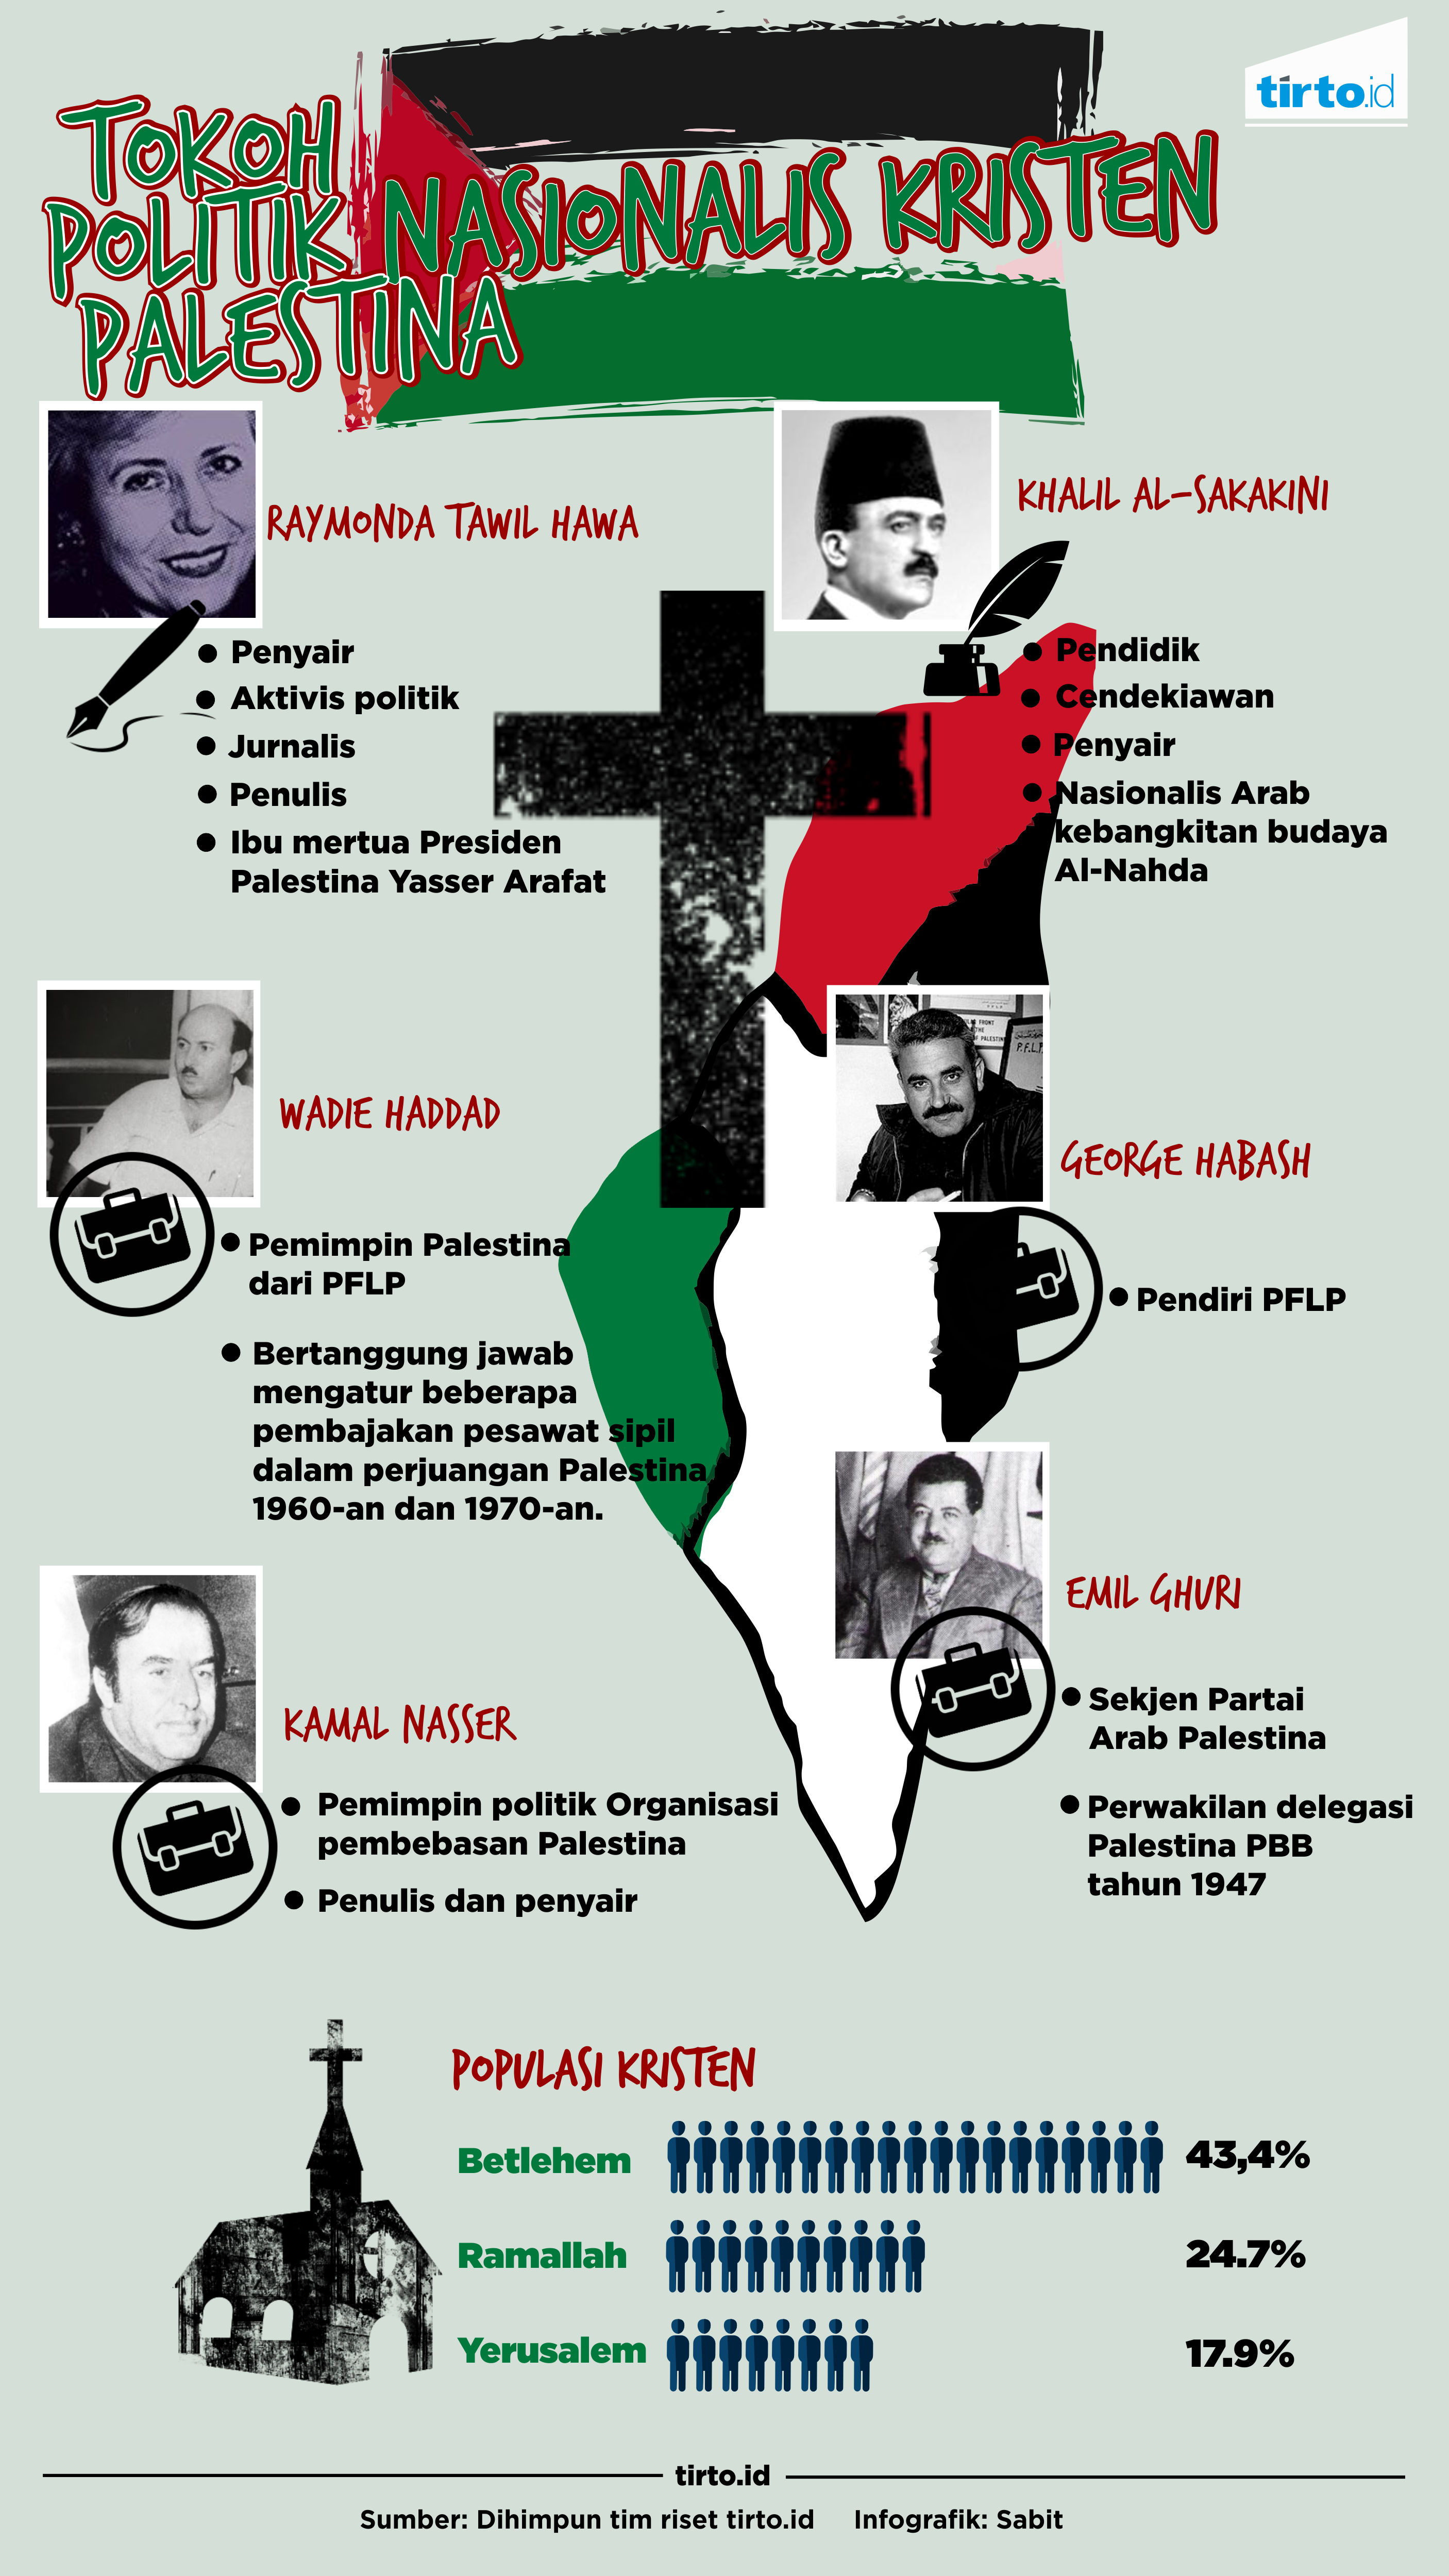 Infografik Tokoh Politik Nasional Kristen Palestina